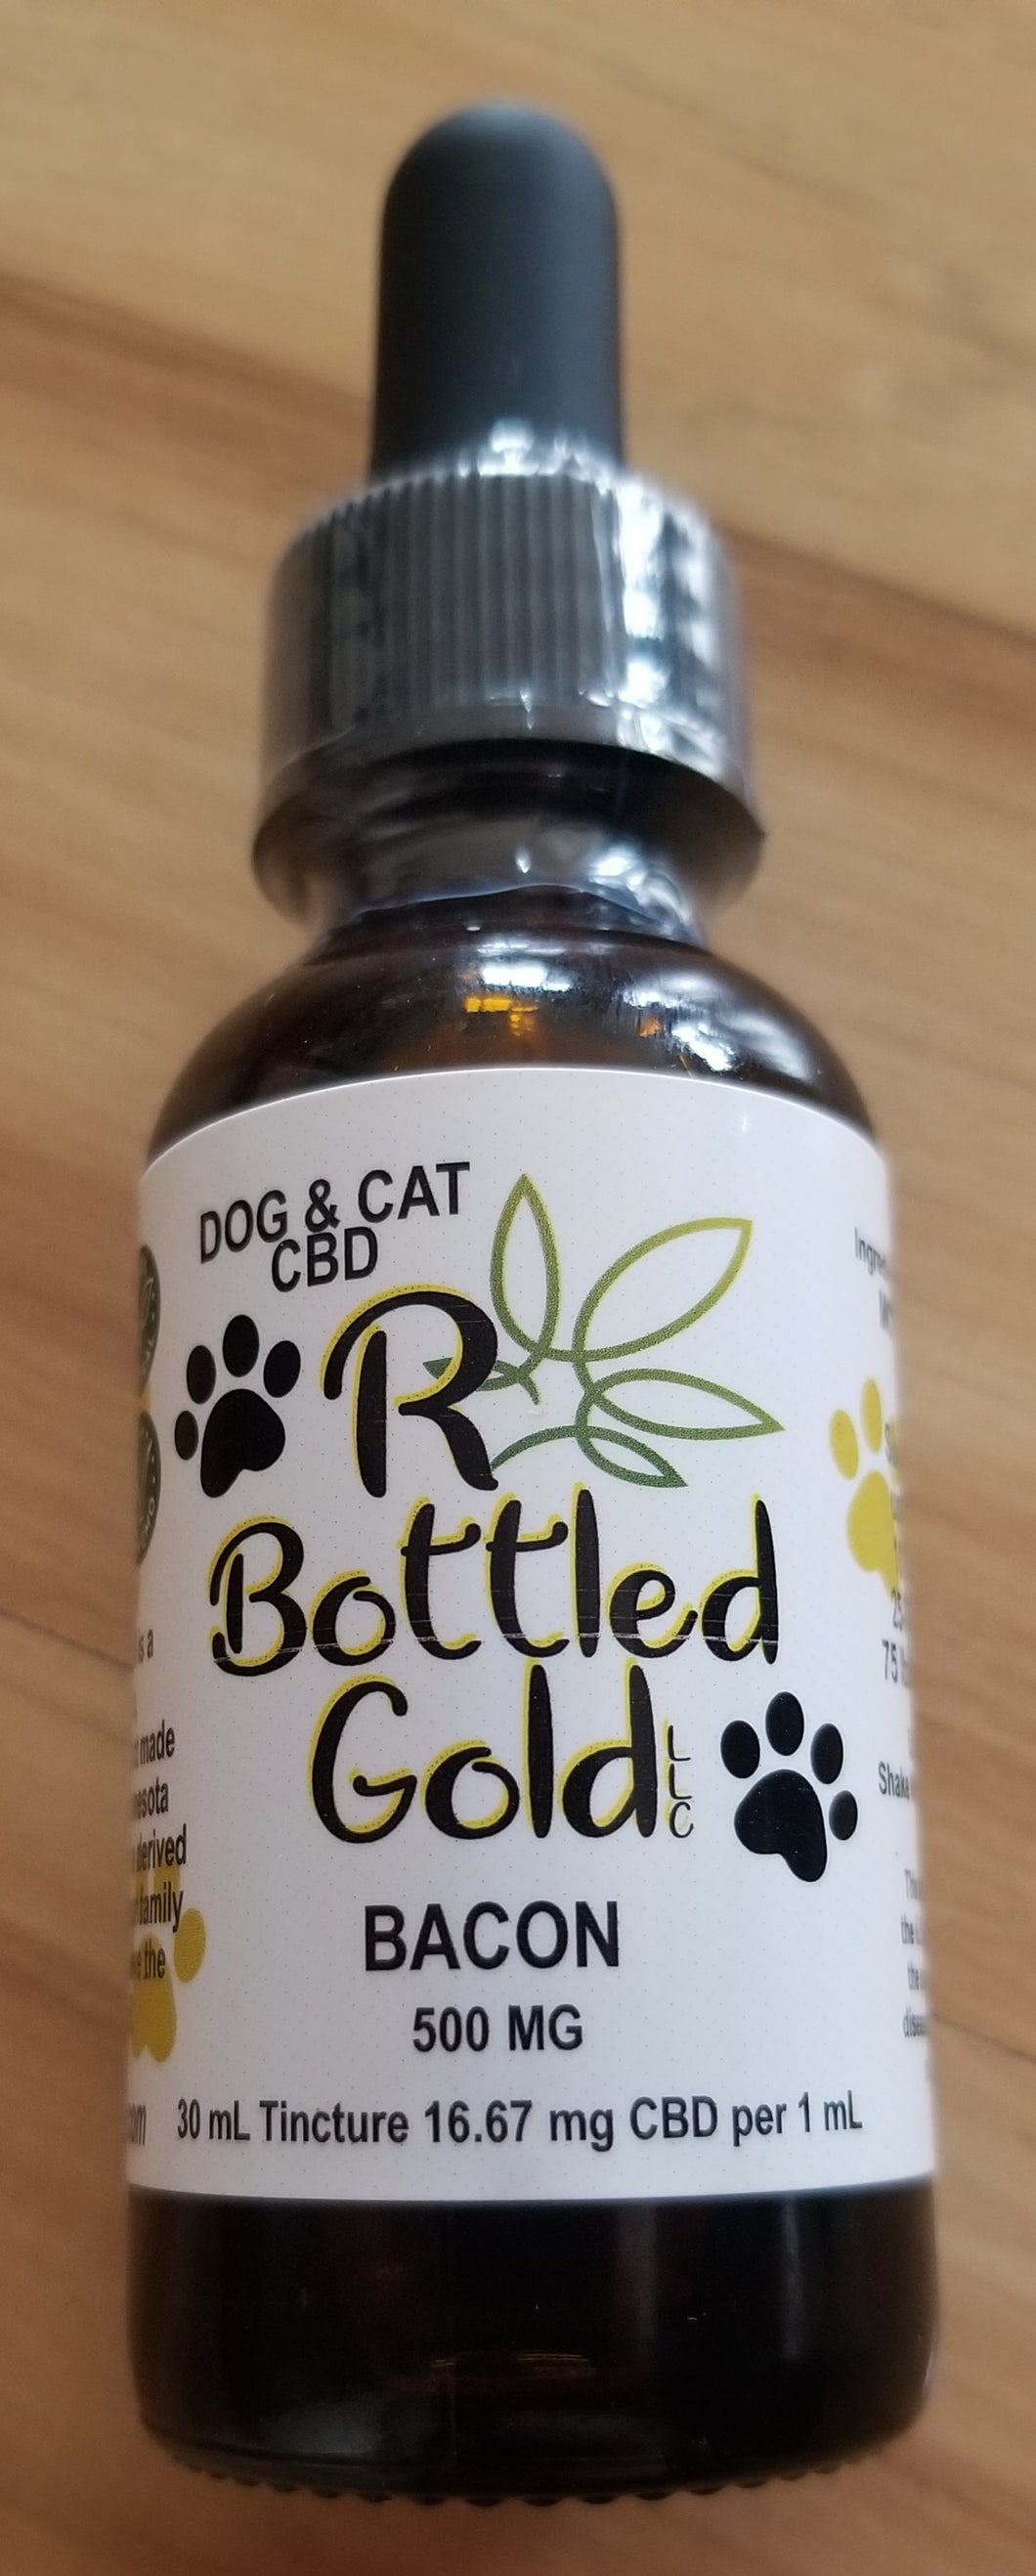 Dog & Cat CBD Oil Tincture - R Bottled Gold LLC